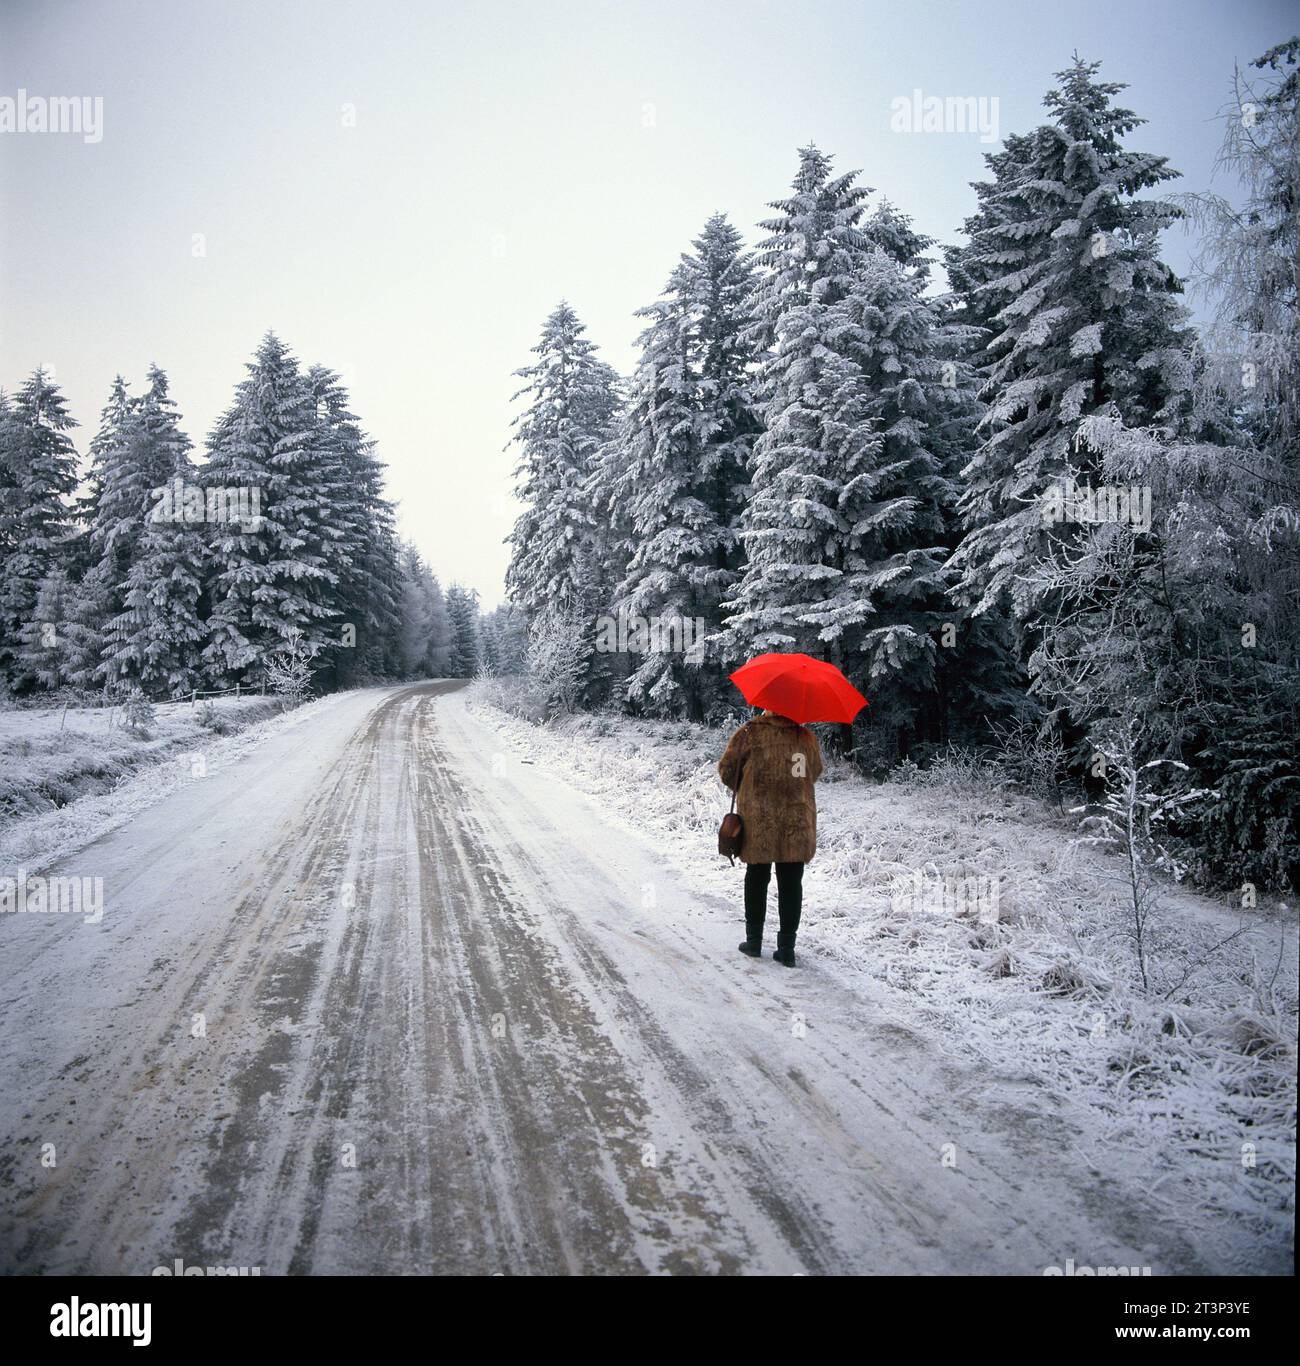 Polonia. Scena invernale sulla neve. Vista posteriore della donna che cammina con l'ombrello rosso. Foto Stock